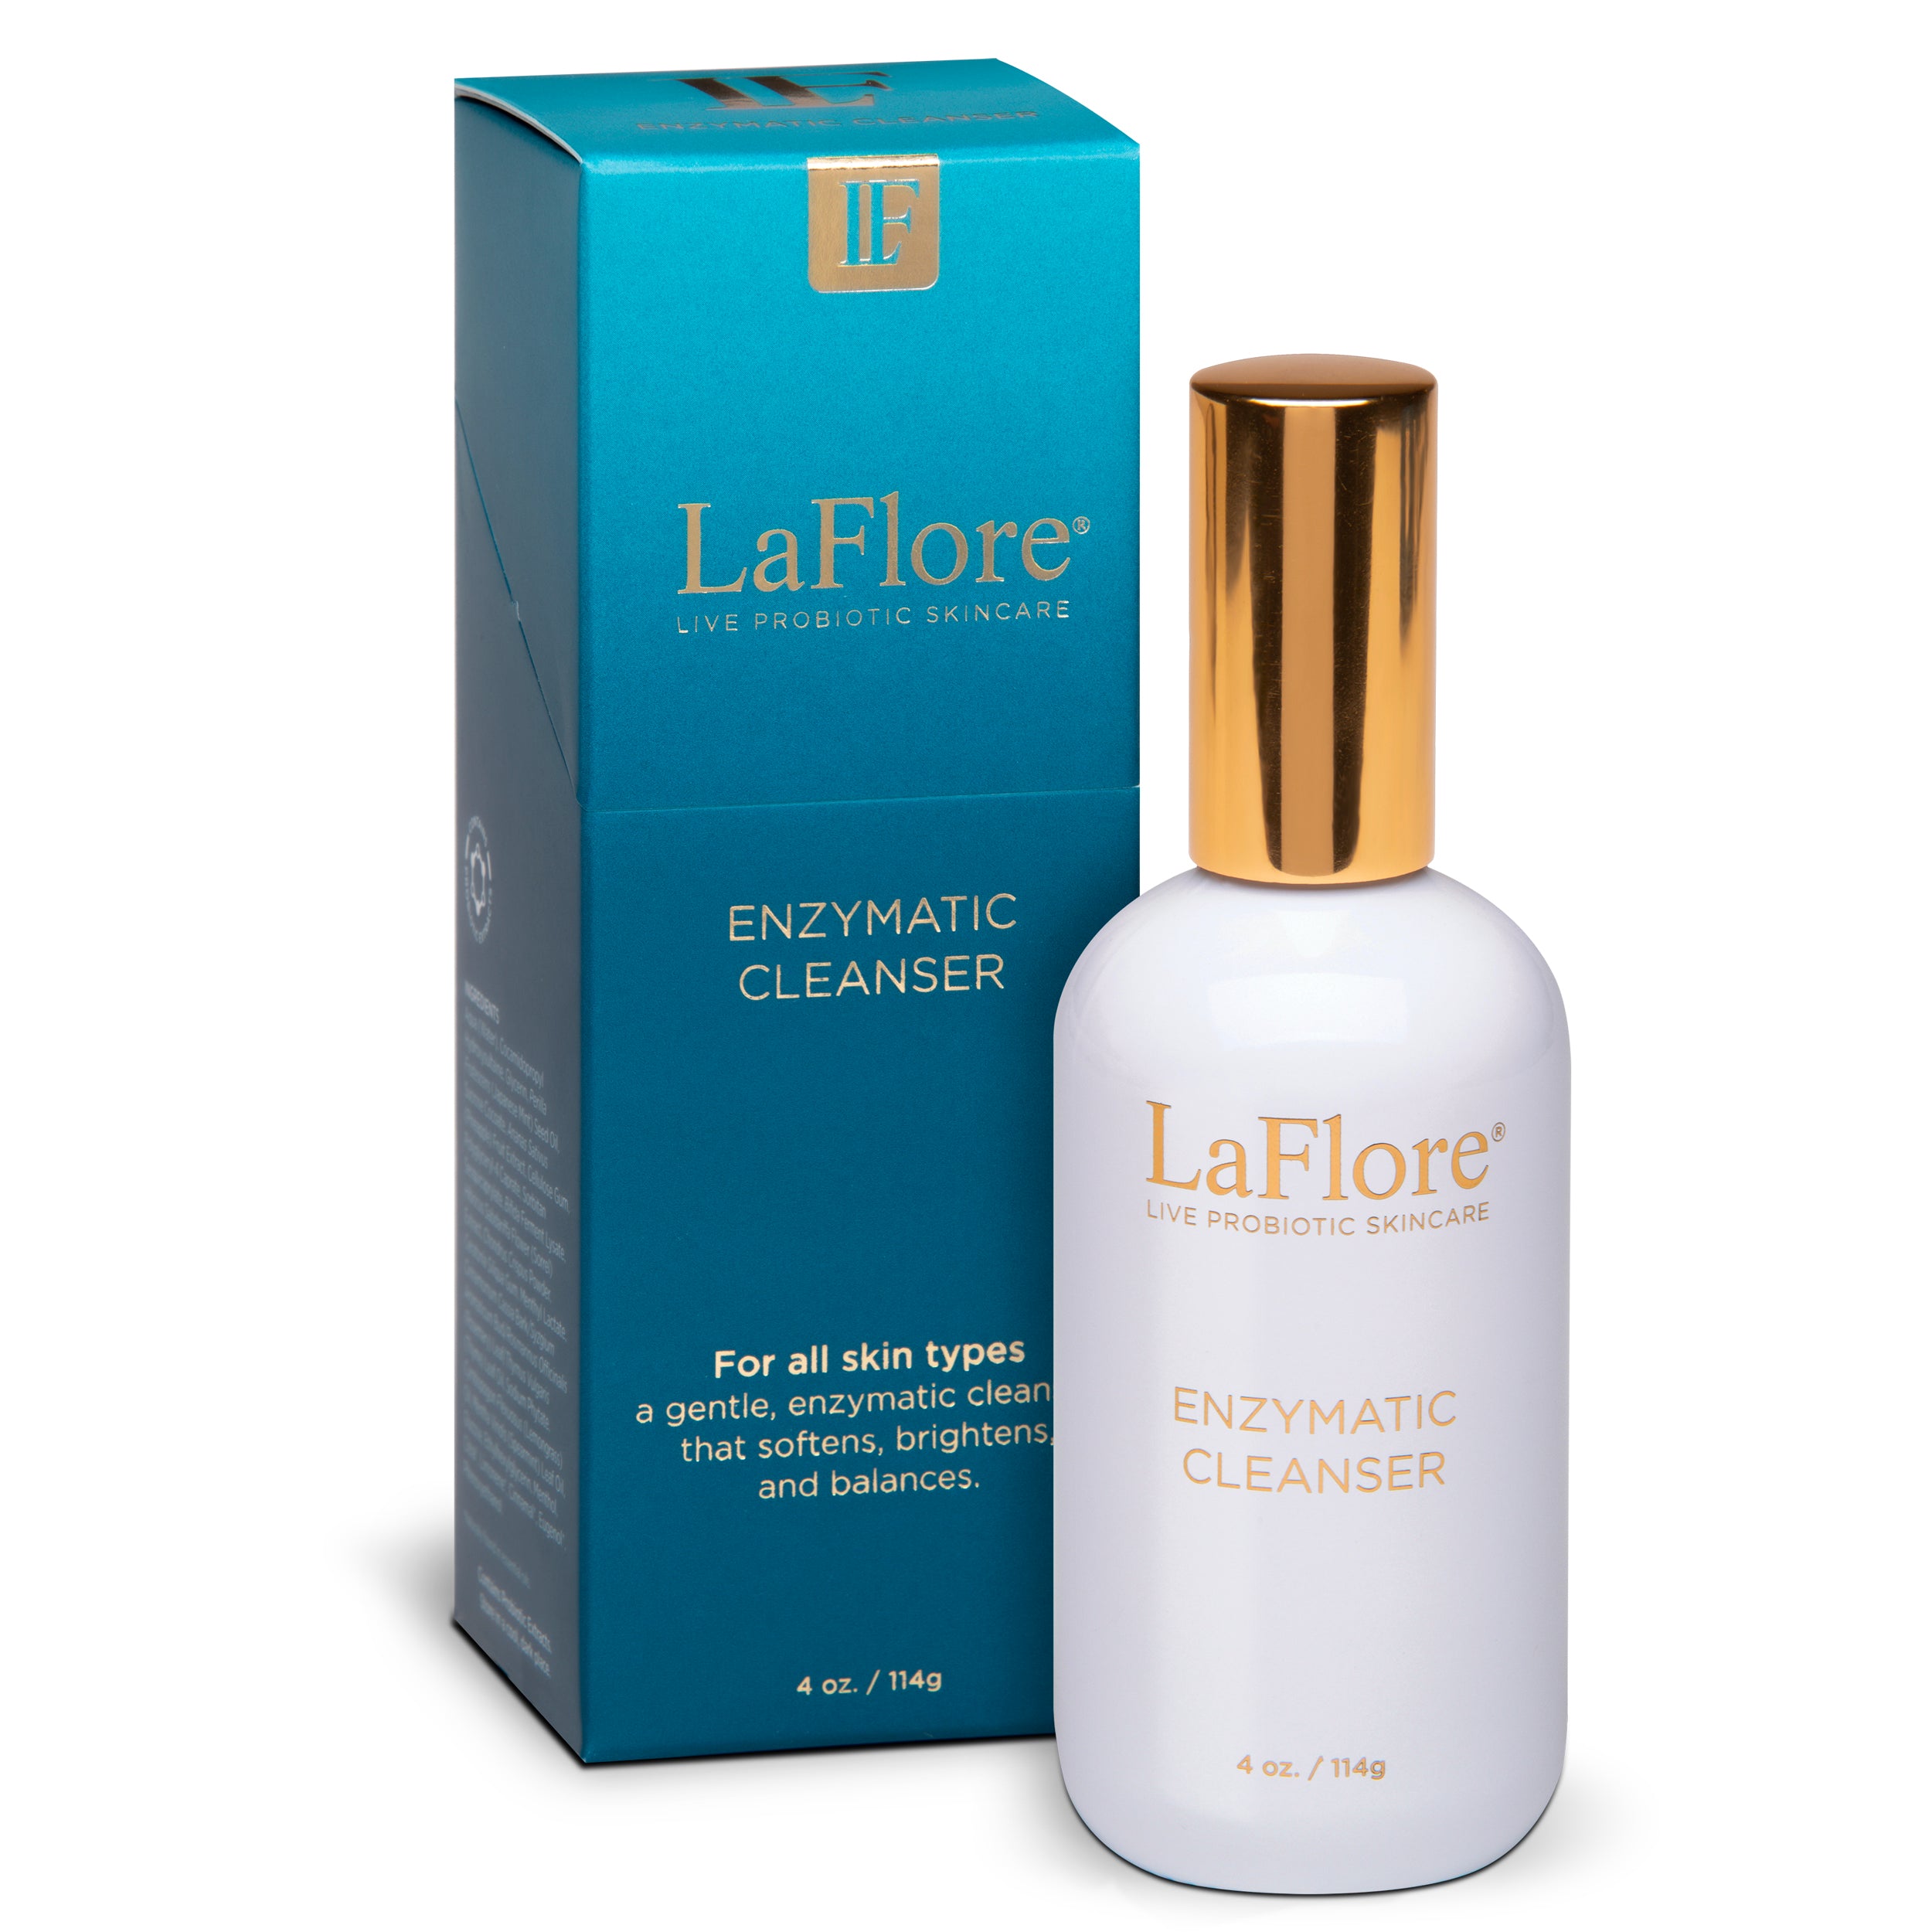 LaFlore Enzymatic Cleanser - Live Probiotic Skin care